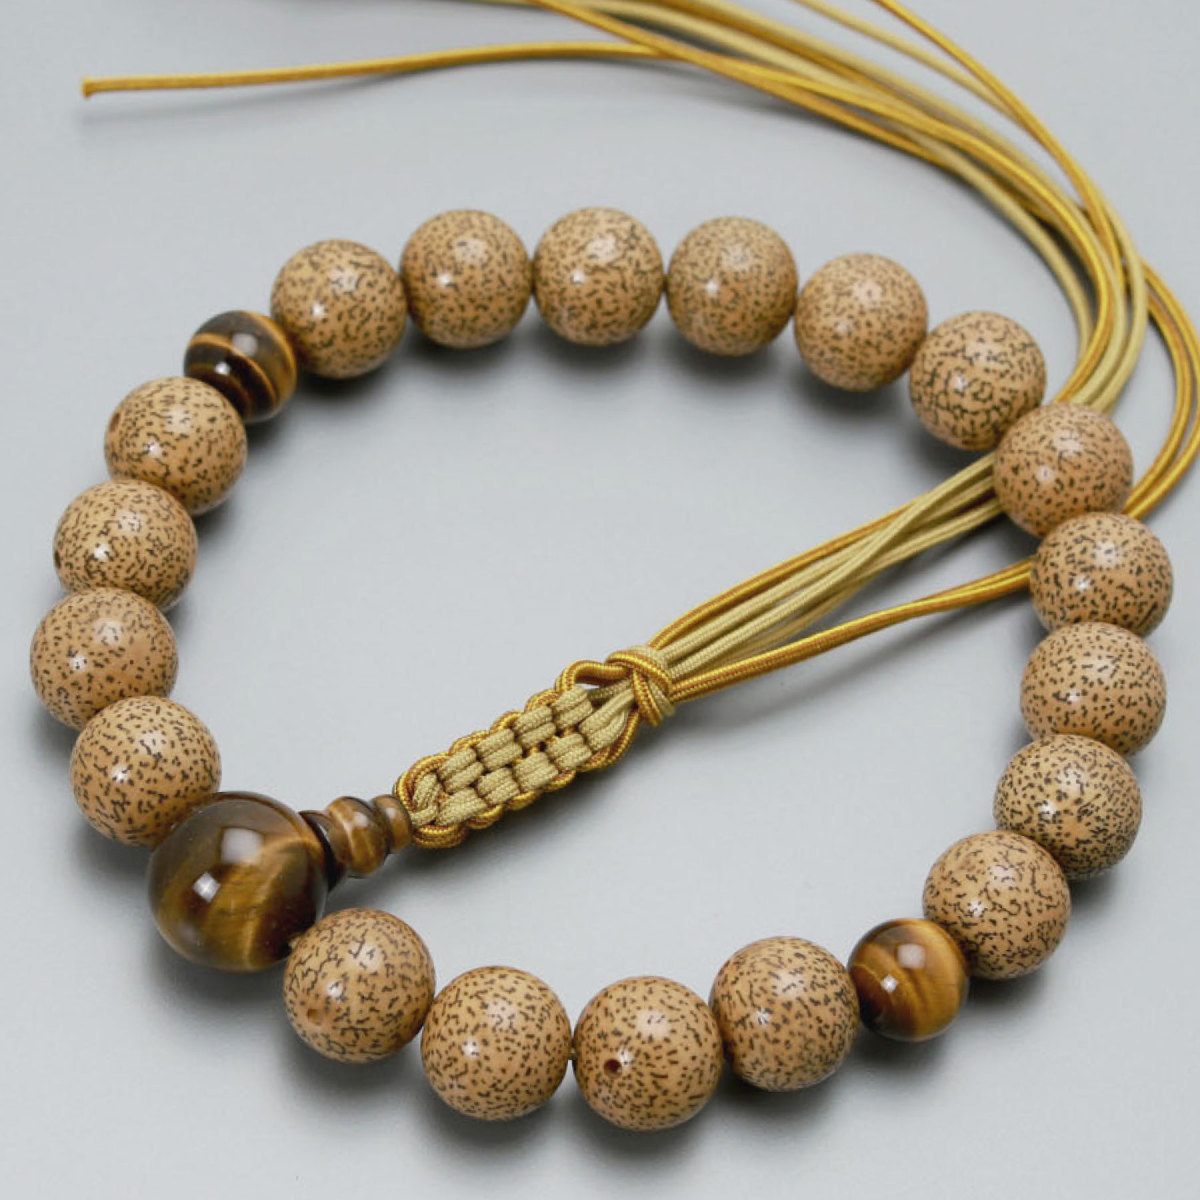 専門店では 数珠 男性用 京念珠 京匠の伝統 古色星月19玉 虎目石 正絹